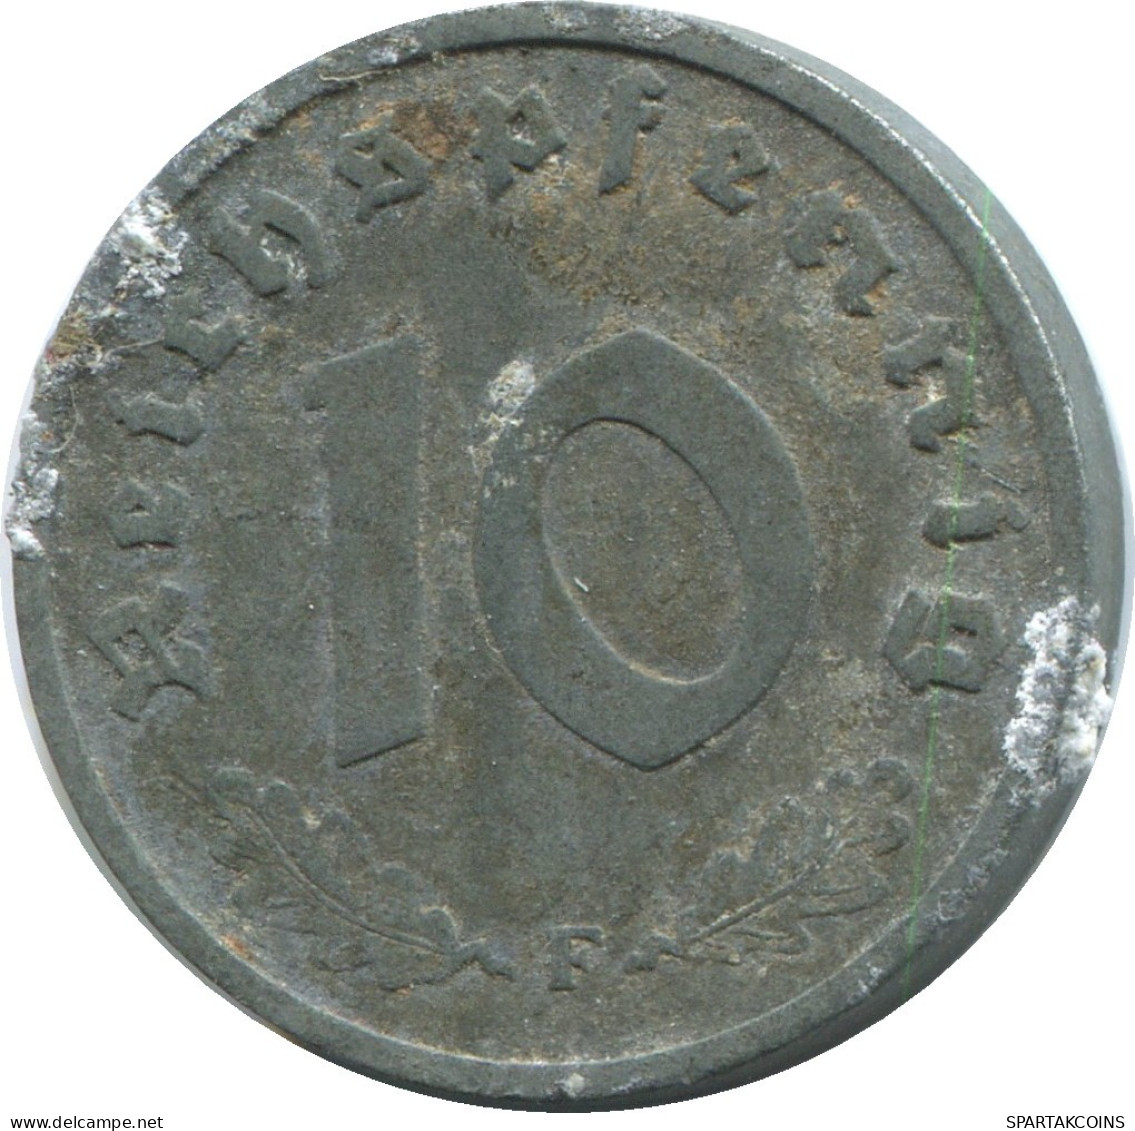 10 REICHSPFENNIG 1941 F ALEMANIA Moneda GERMANY #DE10443.5.E.A - 10 Reichspfennig